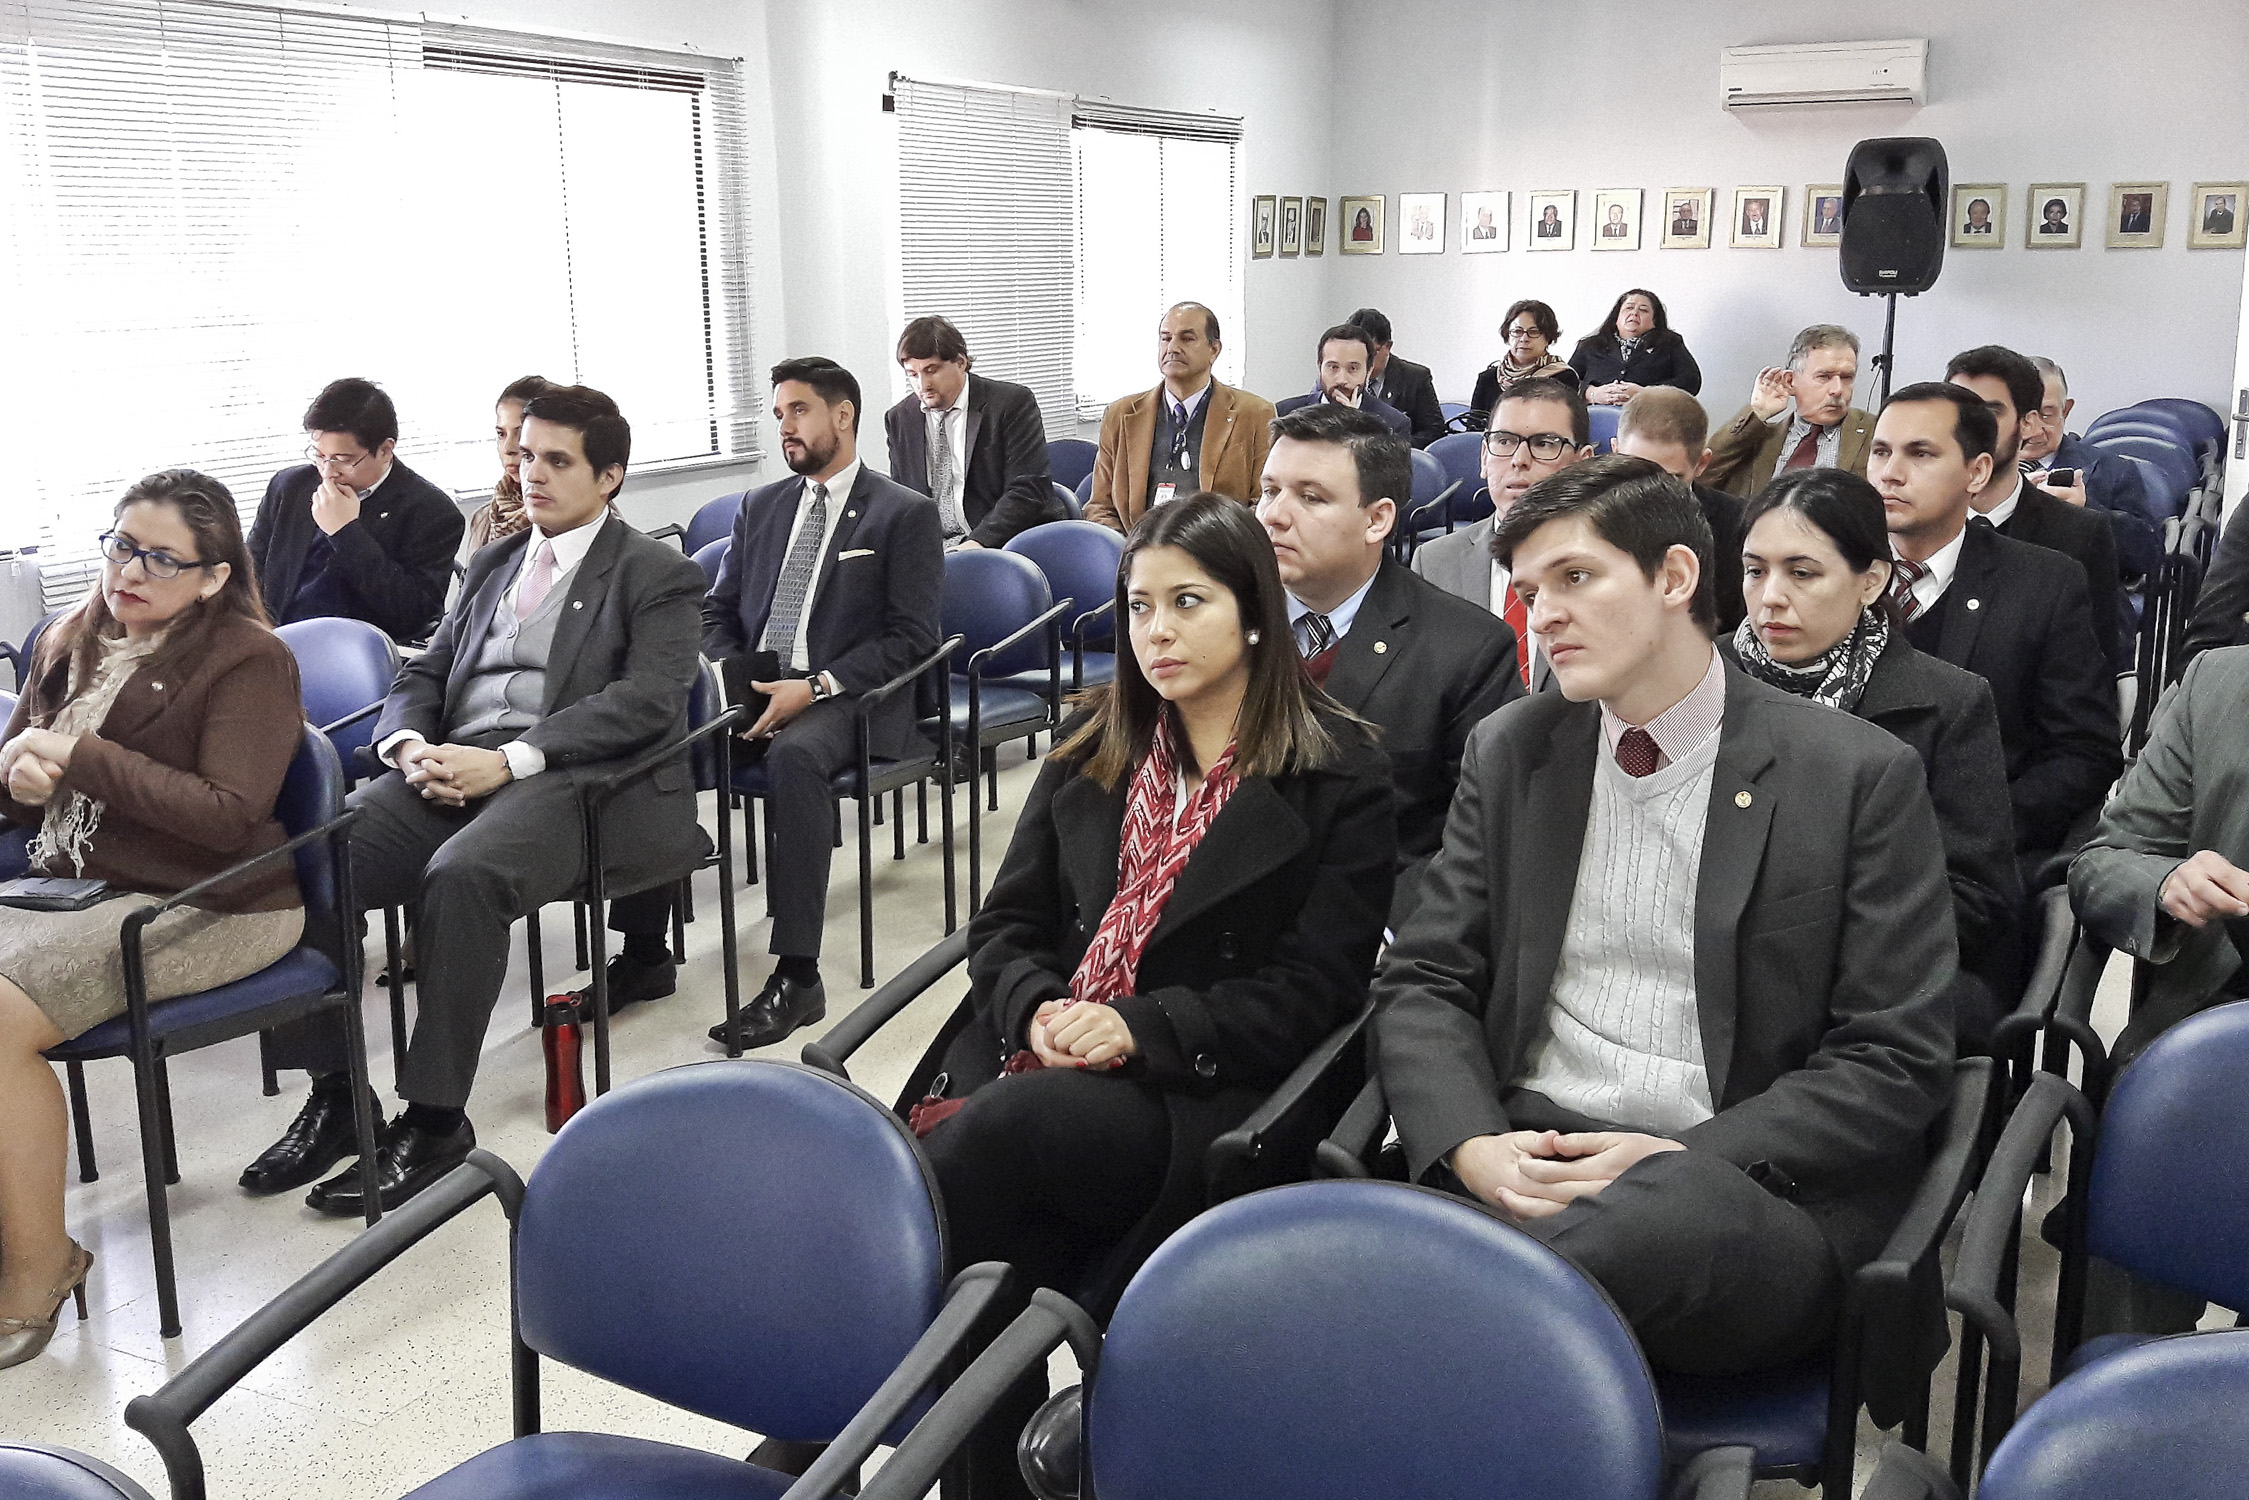 Conferencia sobre la implementación del MECIP se llevó a cabo en la Academia Diplomática y Consular